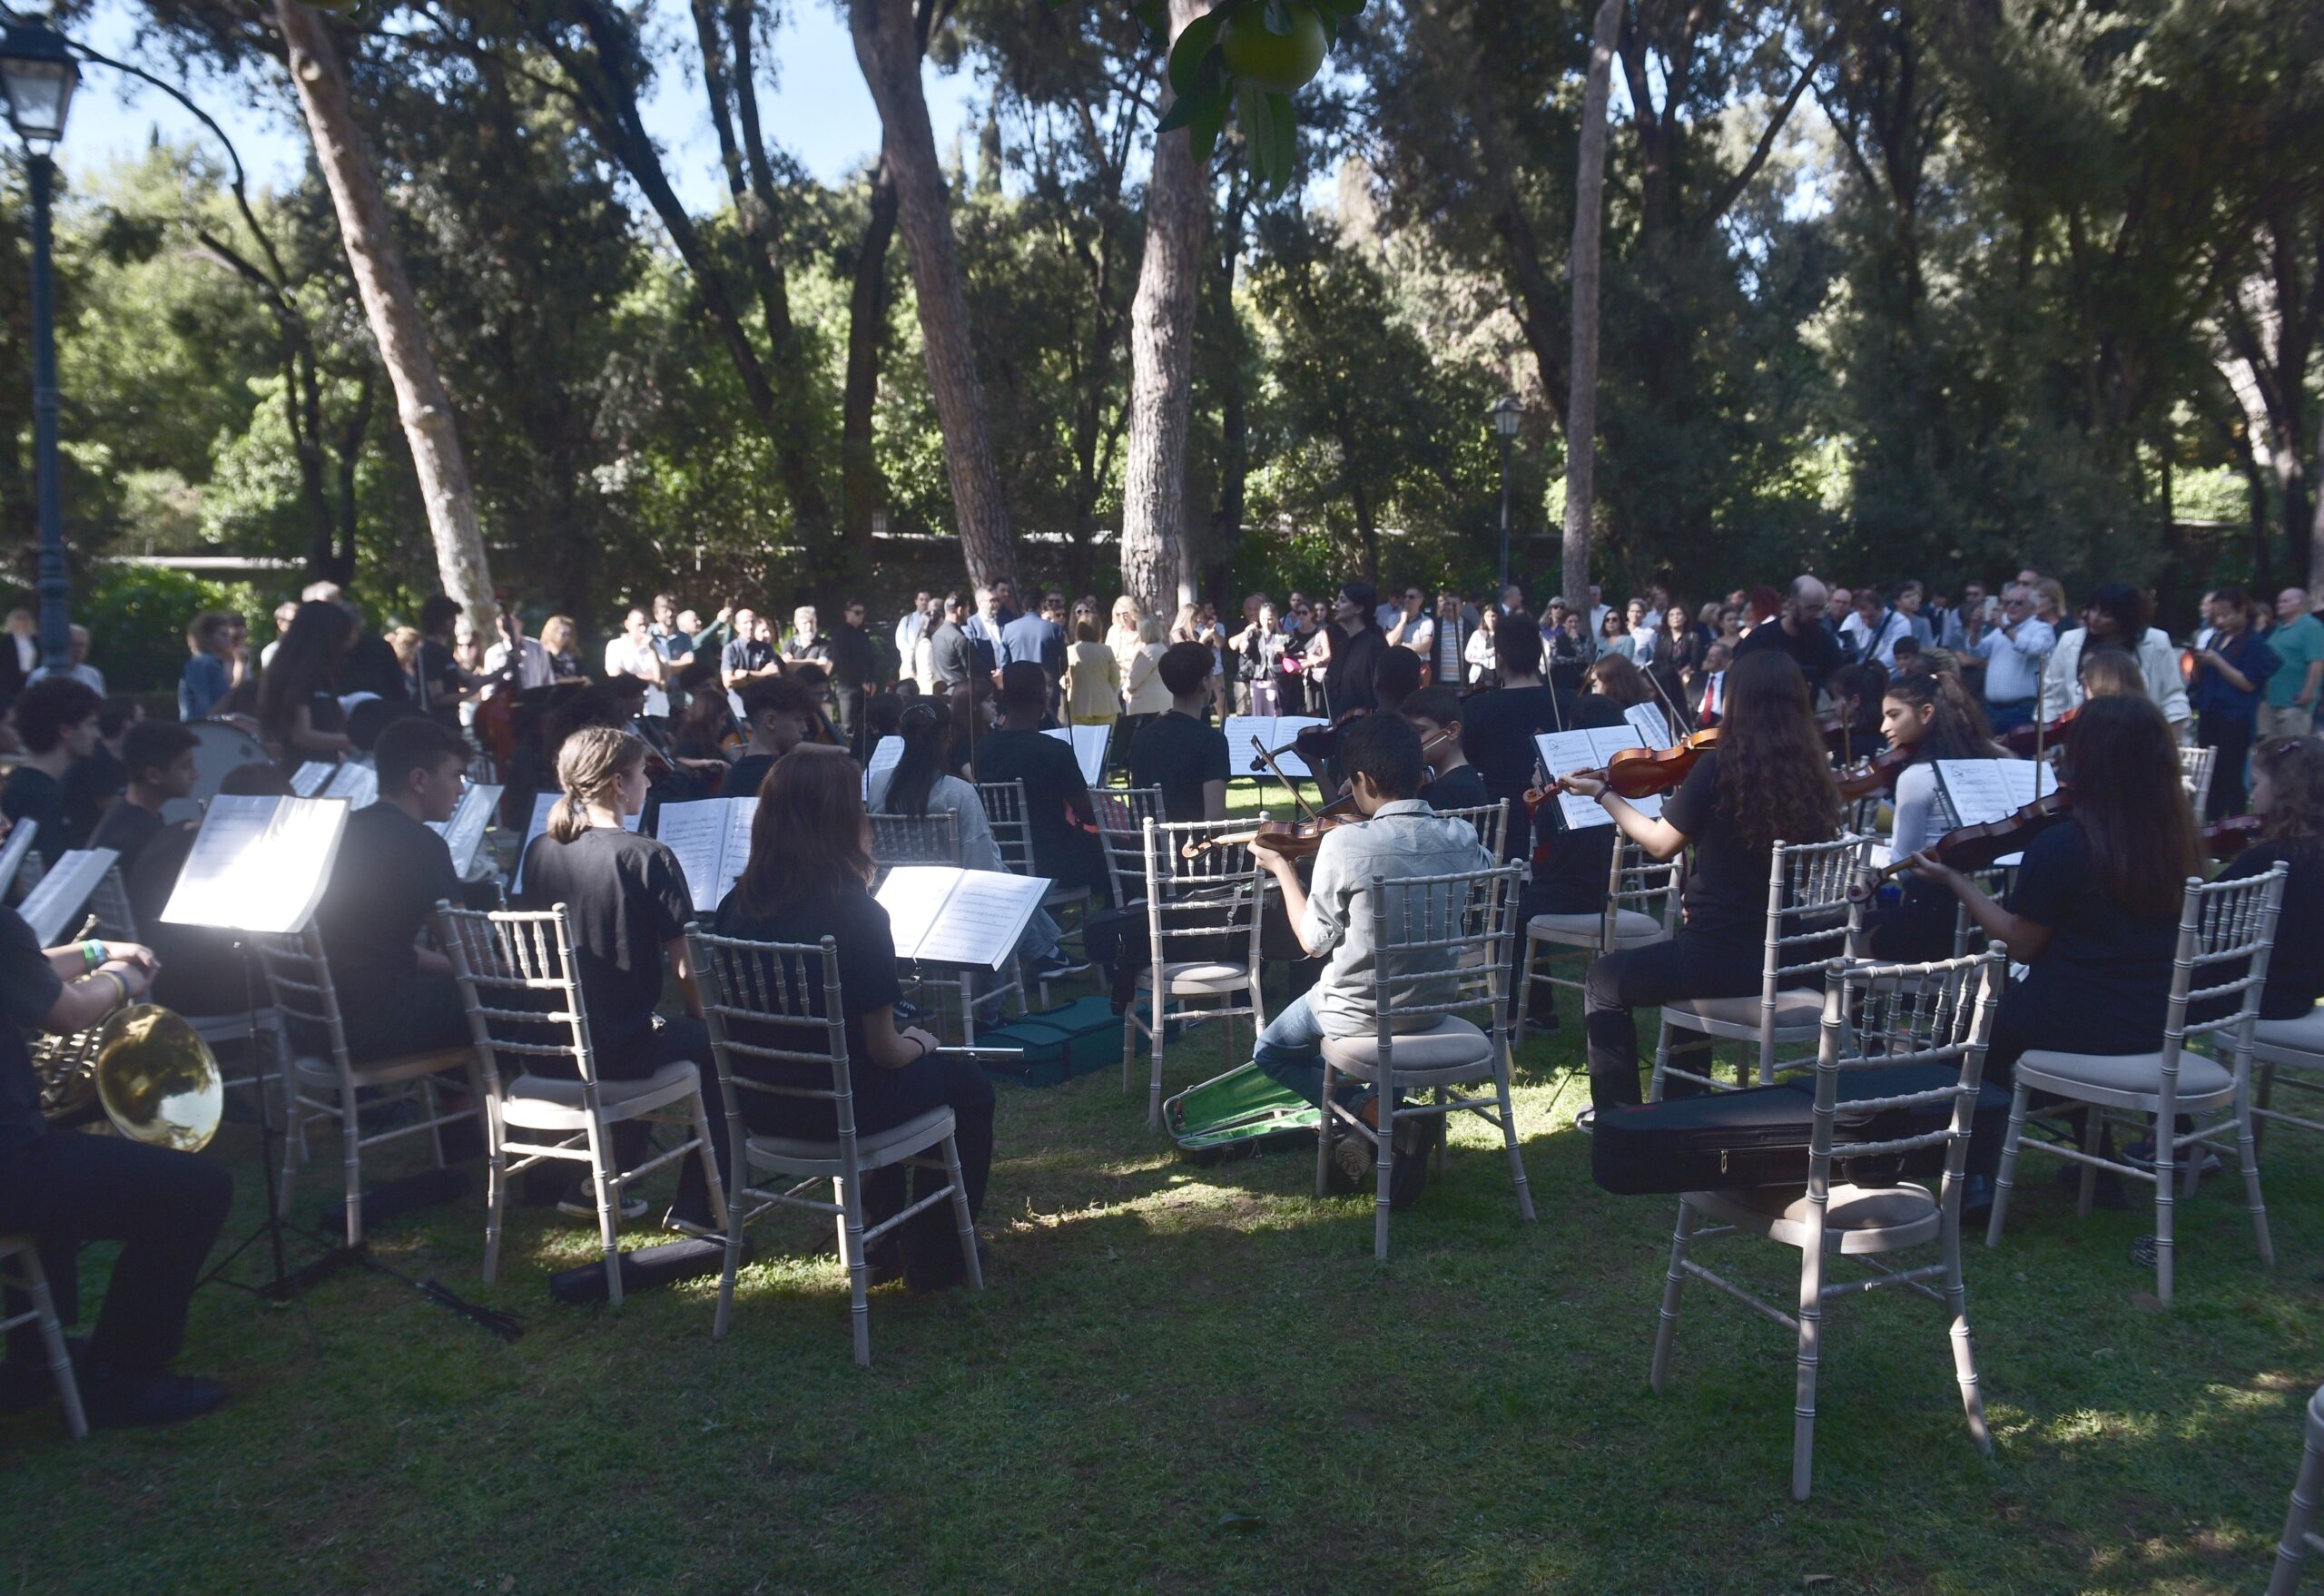 Παρουσία της ΠτΔ η δράση «Γίνε μουσικός ορχήστρας για μια μέρα» στον κήπο του Προεδρικού Μεγάρου